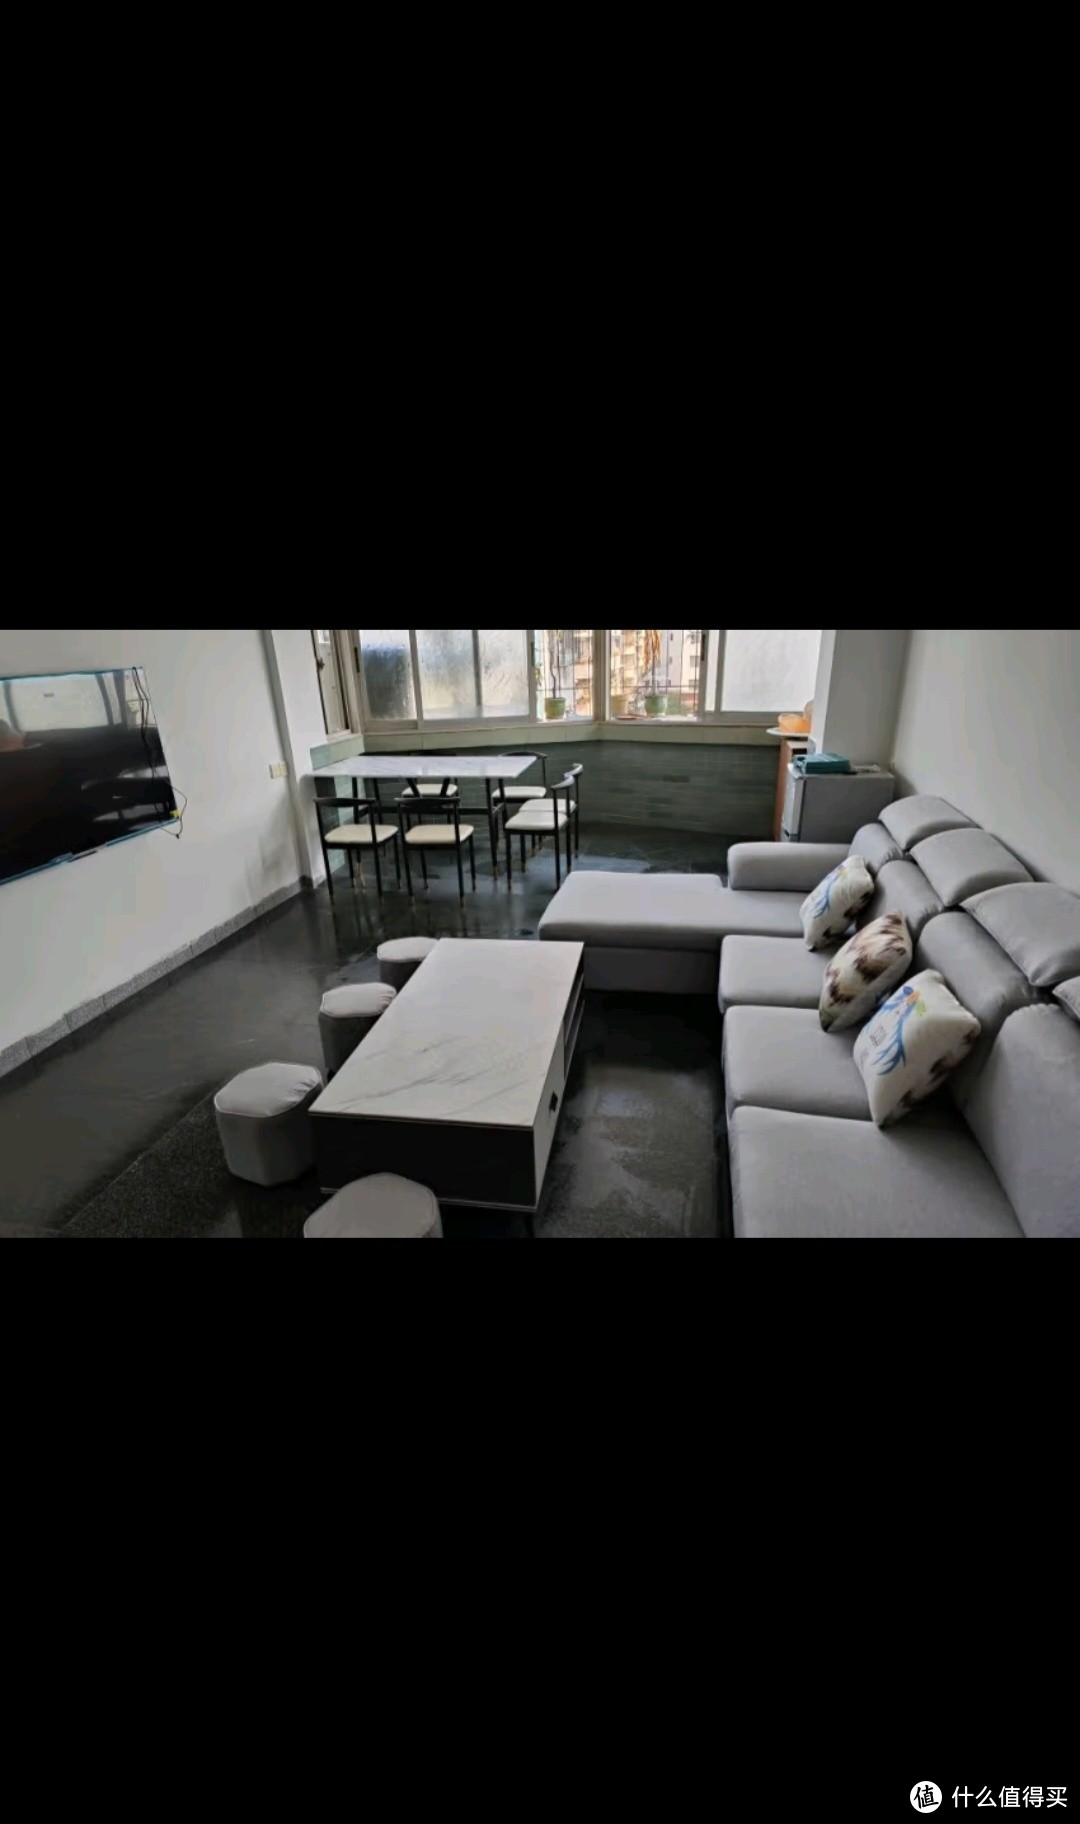 创繁现代可拆洗布艺沙发简约客厅小户型免洗科技布乳胶沙发组合家具 四人位2.75M+左右互换